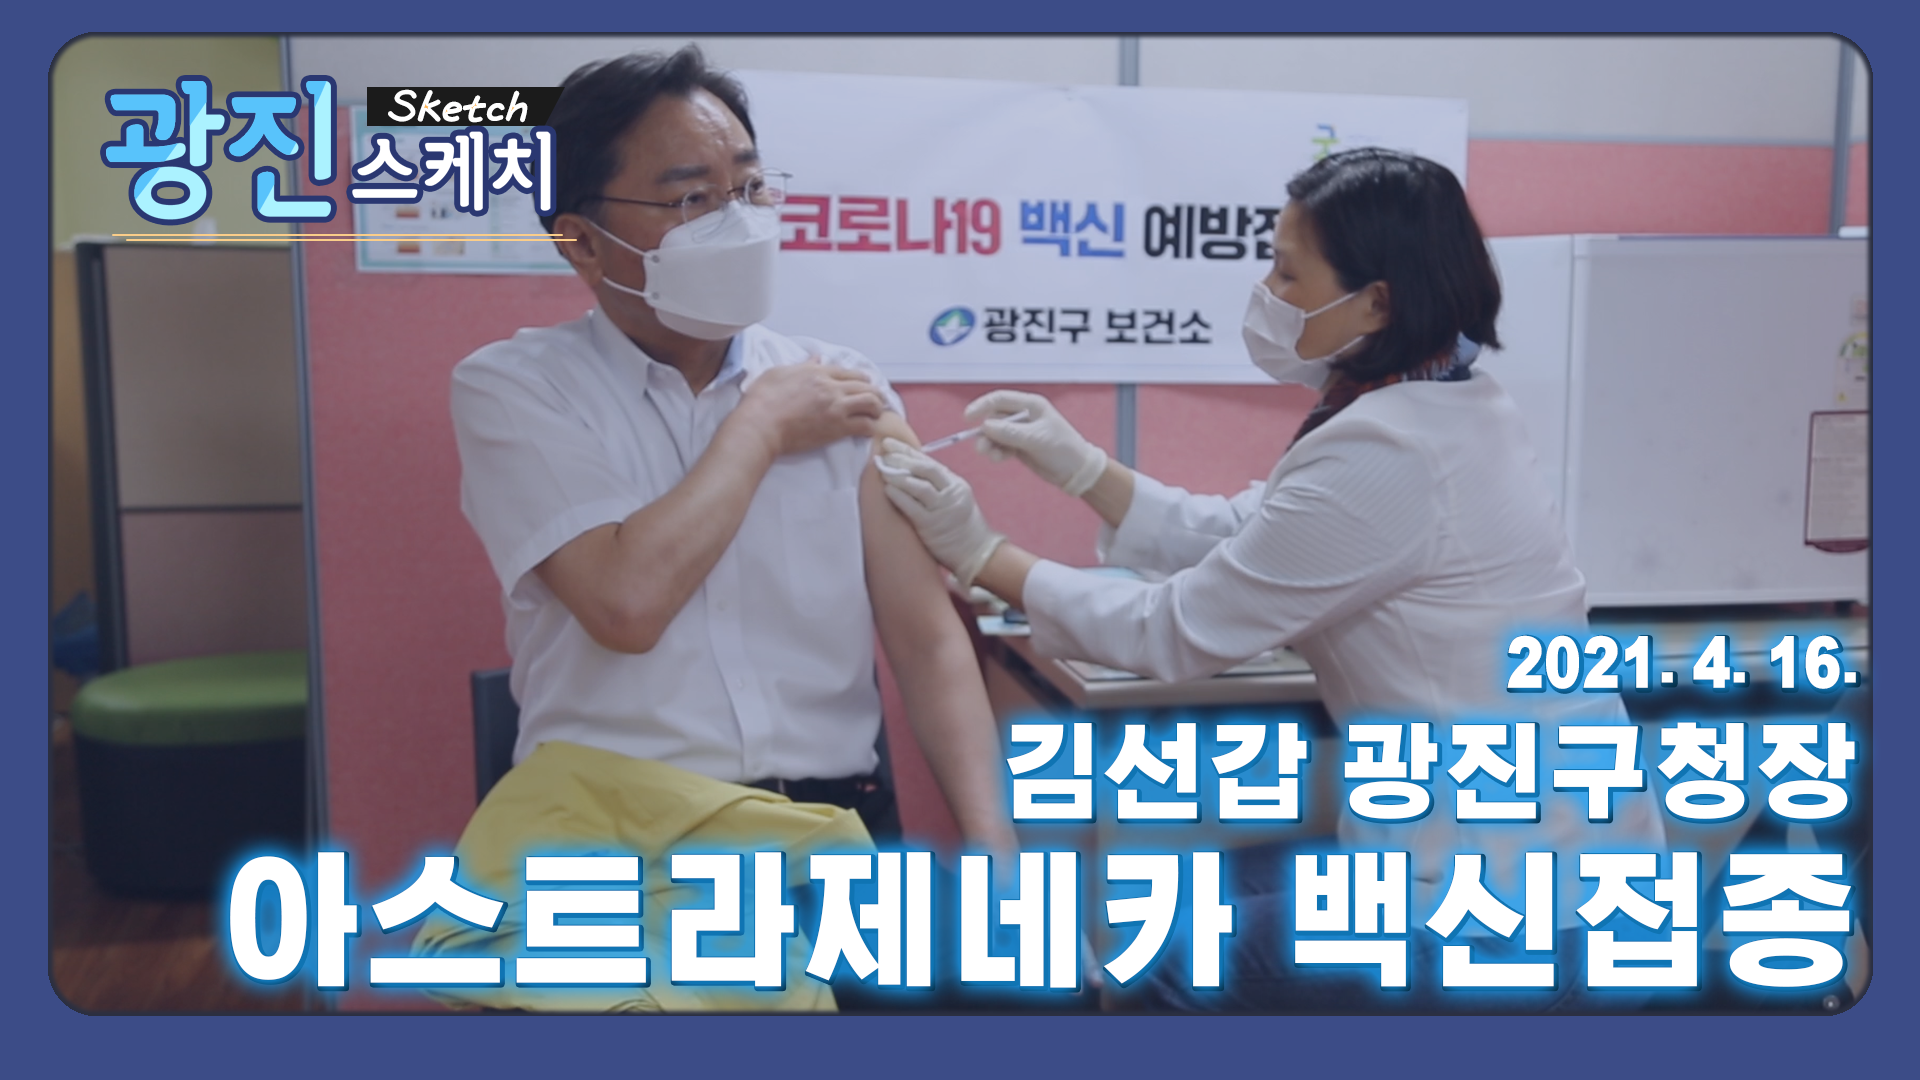 [광진스케치] 김선갑 광진구청장, 아스트라제네카 백신접종